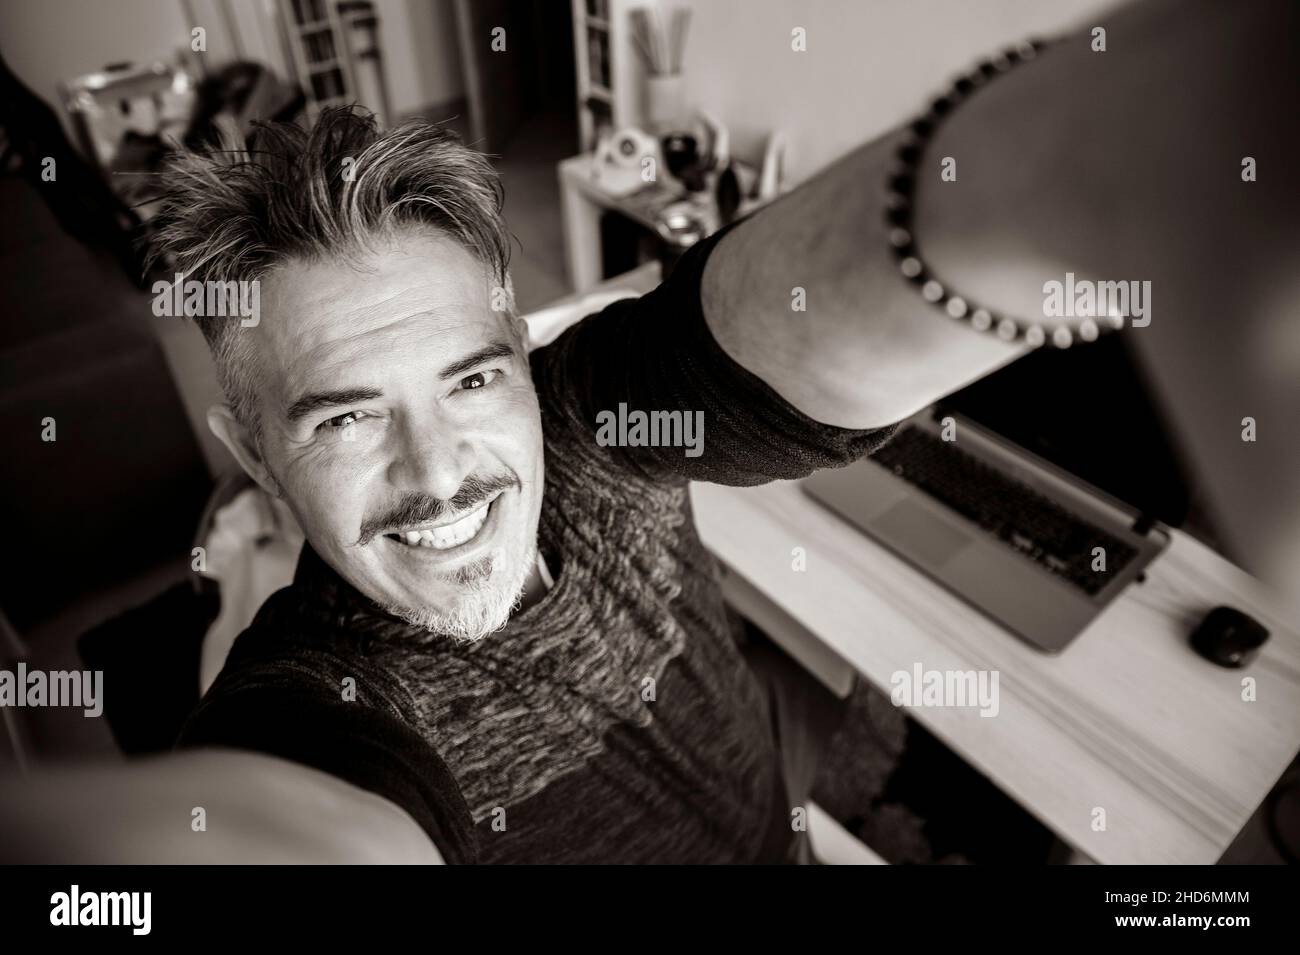 Hübscher kaukasischer 40-jähriger Mann, der zuhause ein Selfie-Porträt in der Halle nimmt - glücklicher Grizzled-Mann, der die Kamera anlächelt - Schwarz und Weiß Stockfoto